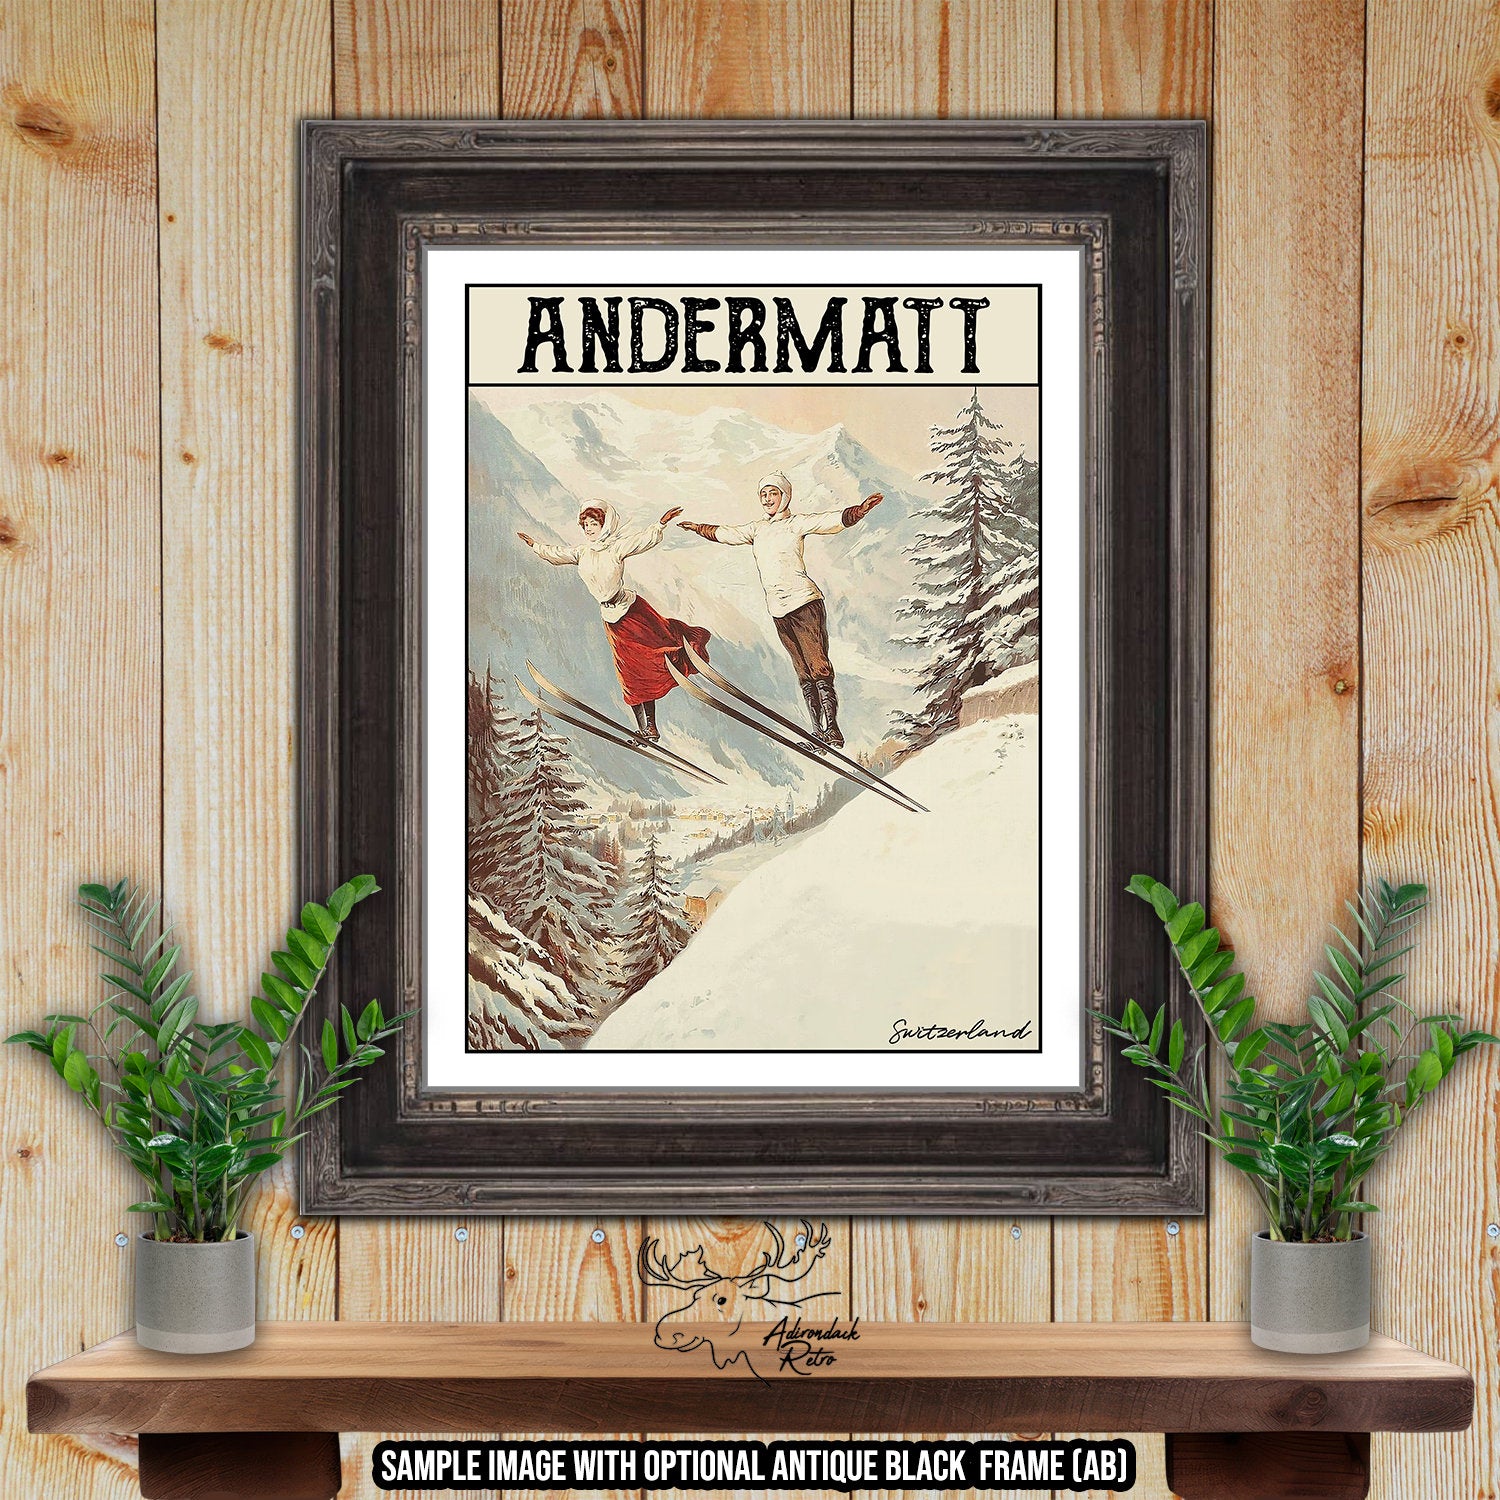 Andermatt Switzerland Retro Ski Resort Art Print atAdirondack Retro